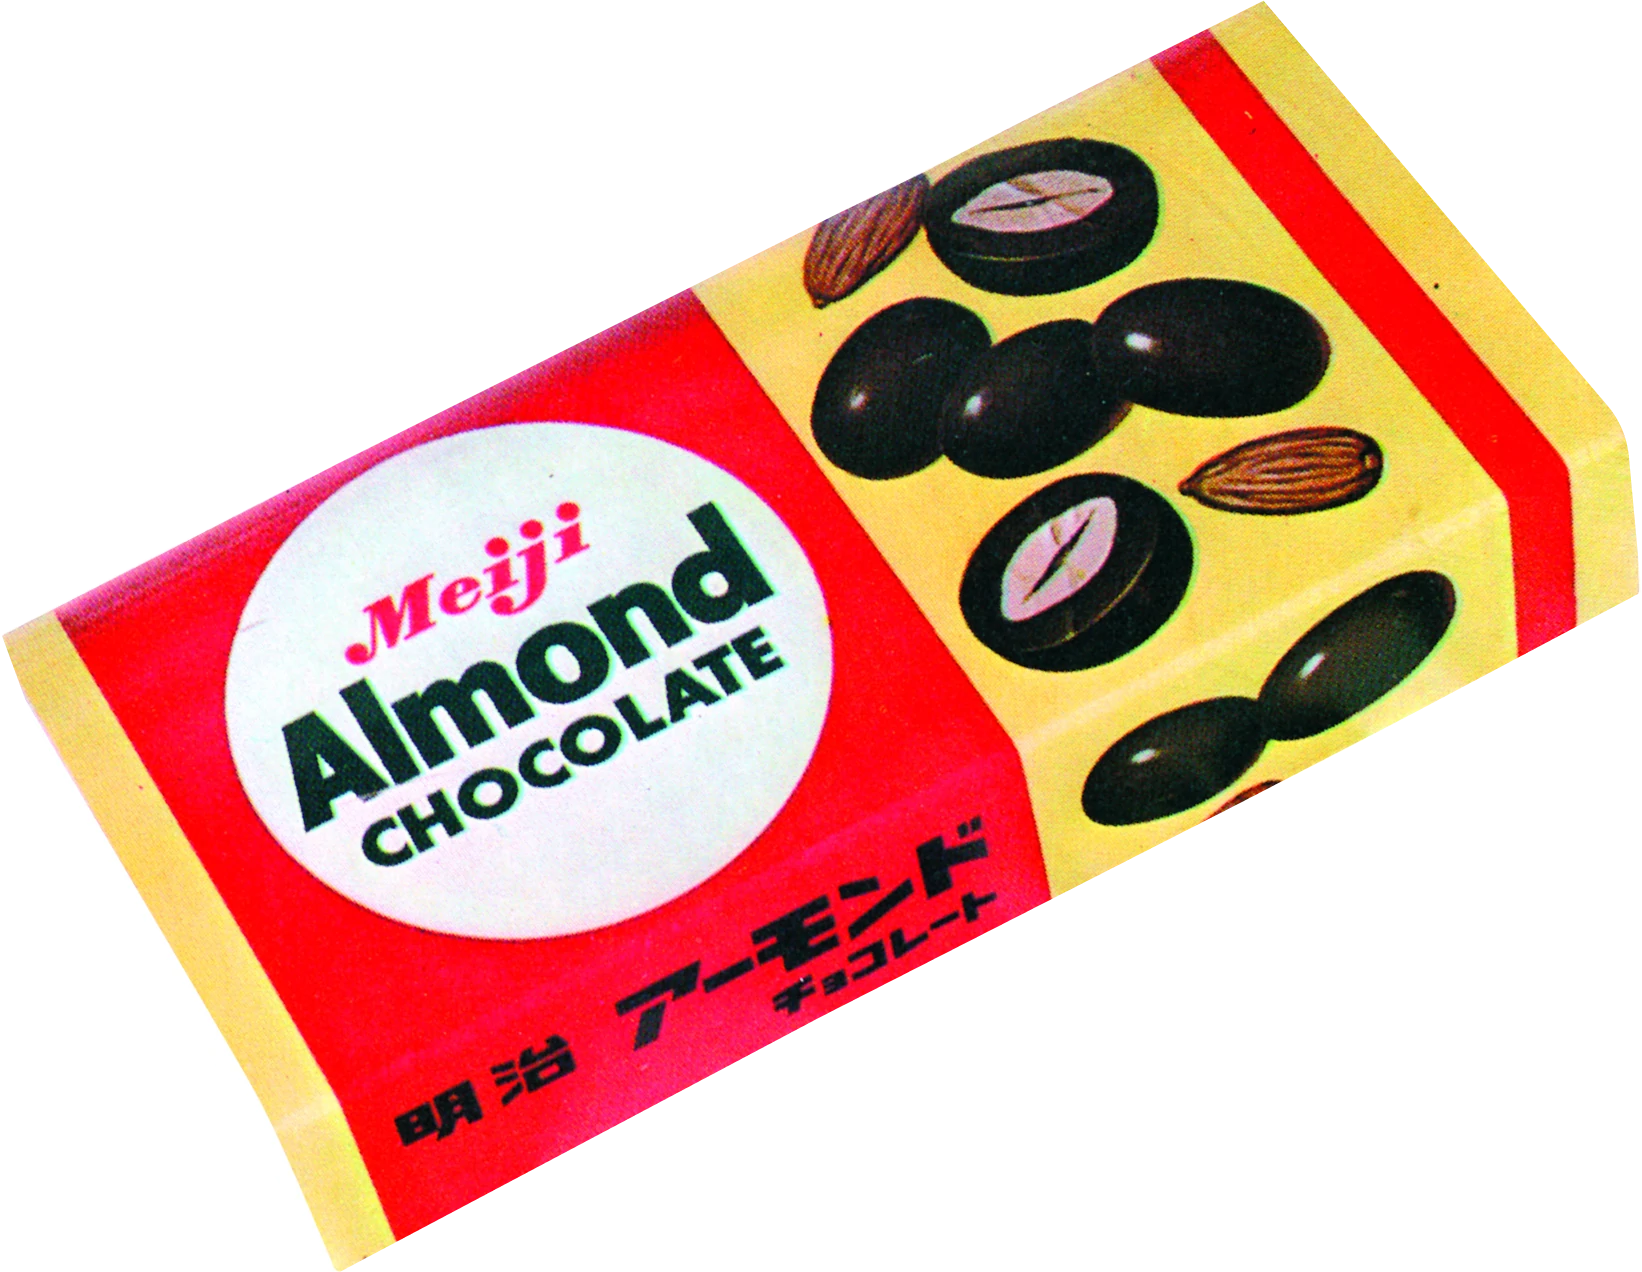 The Original Almond Chocolate